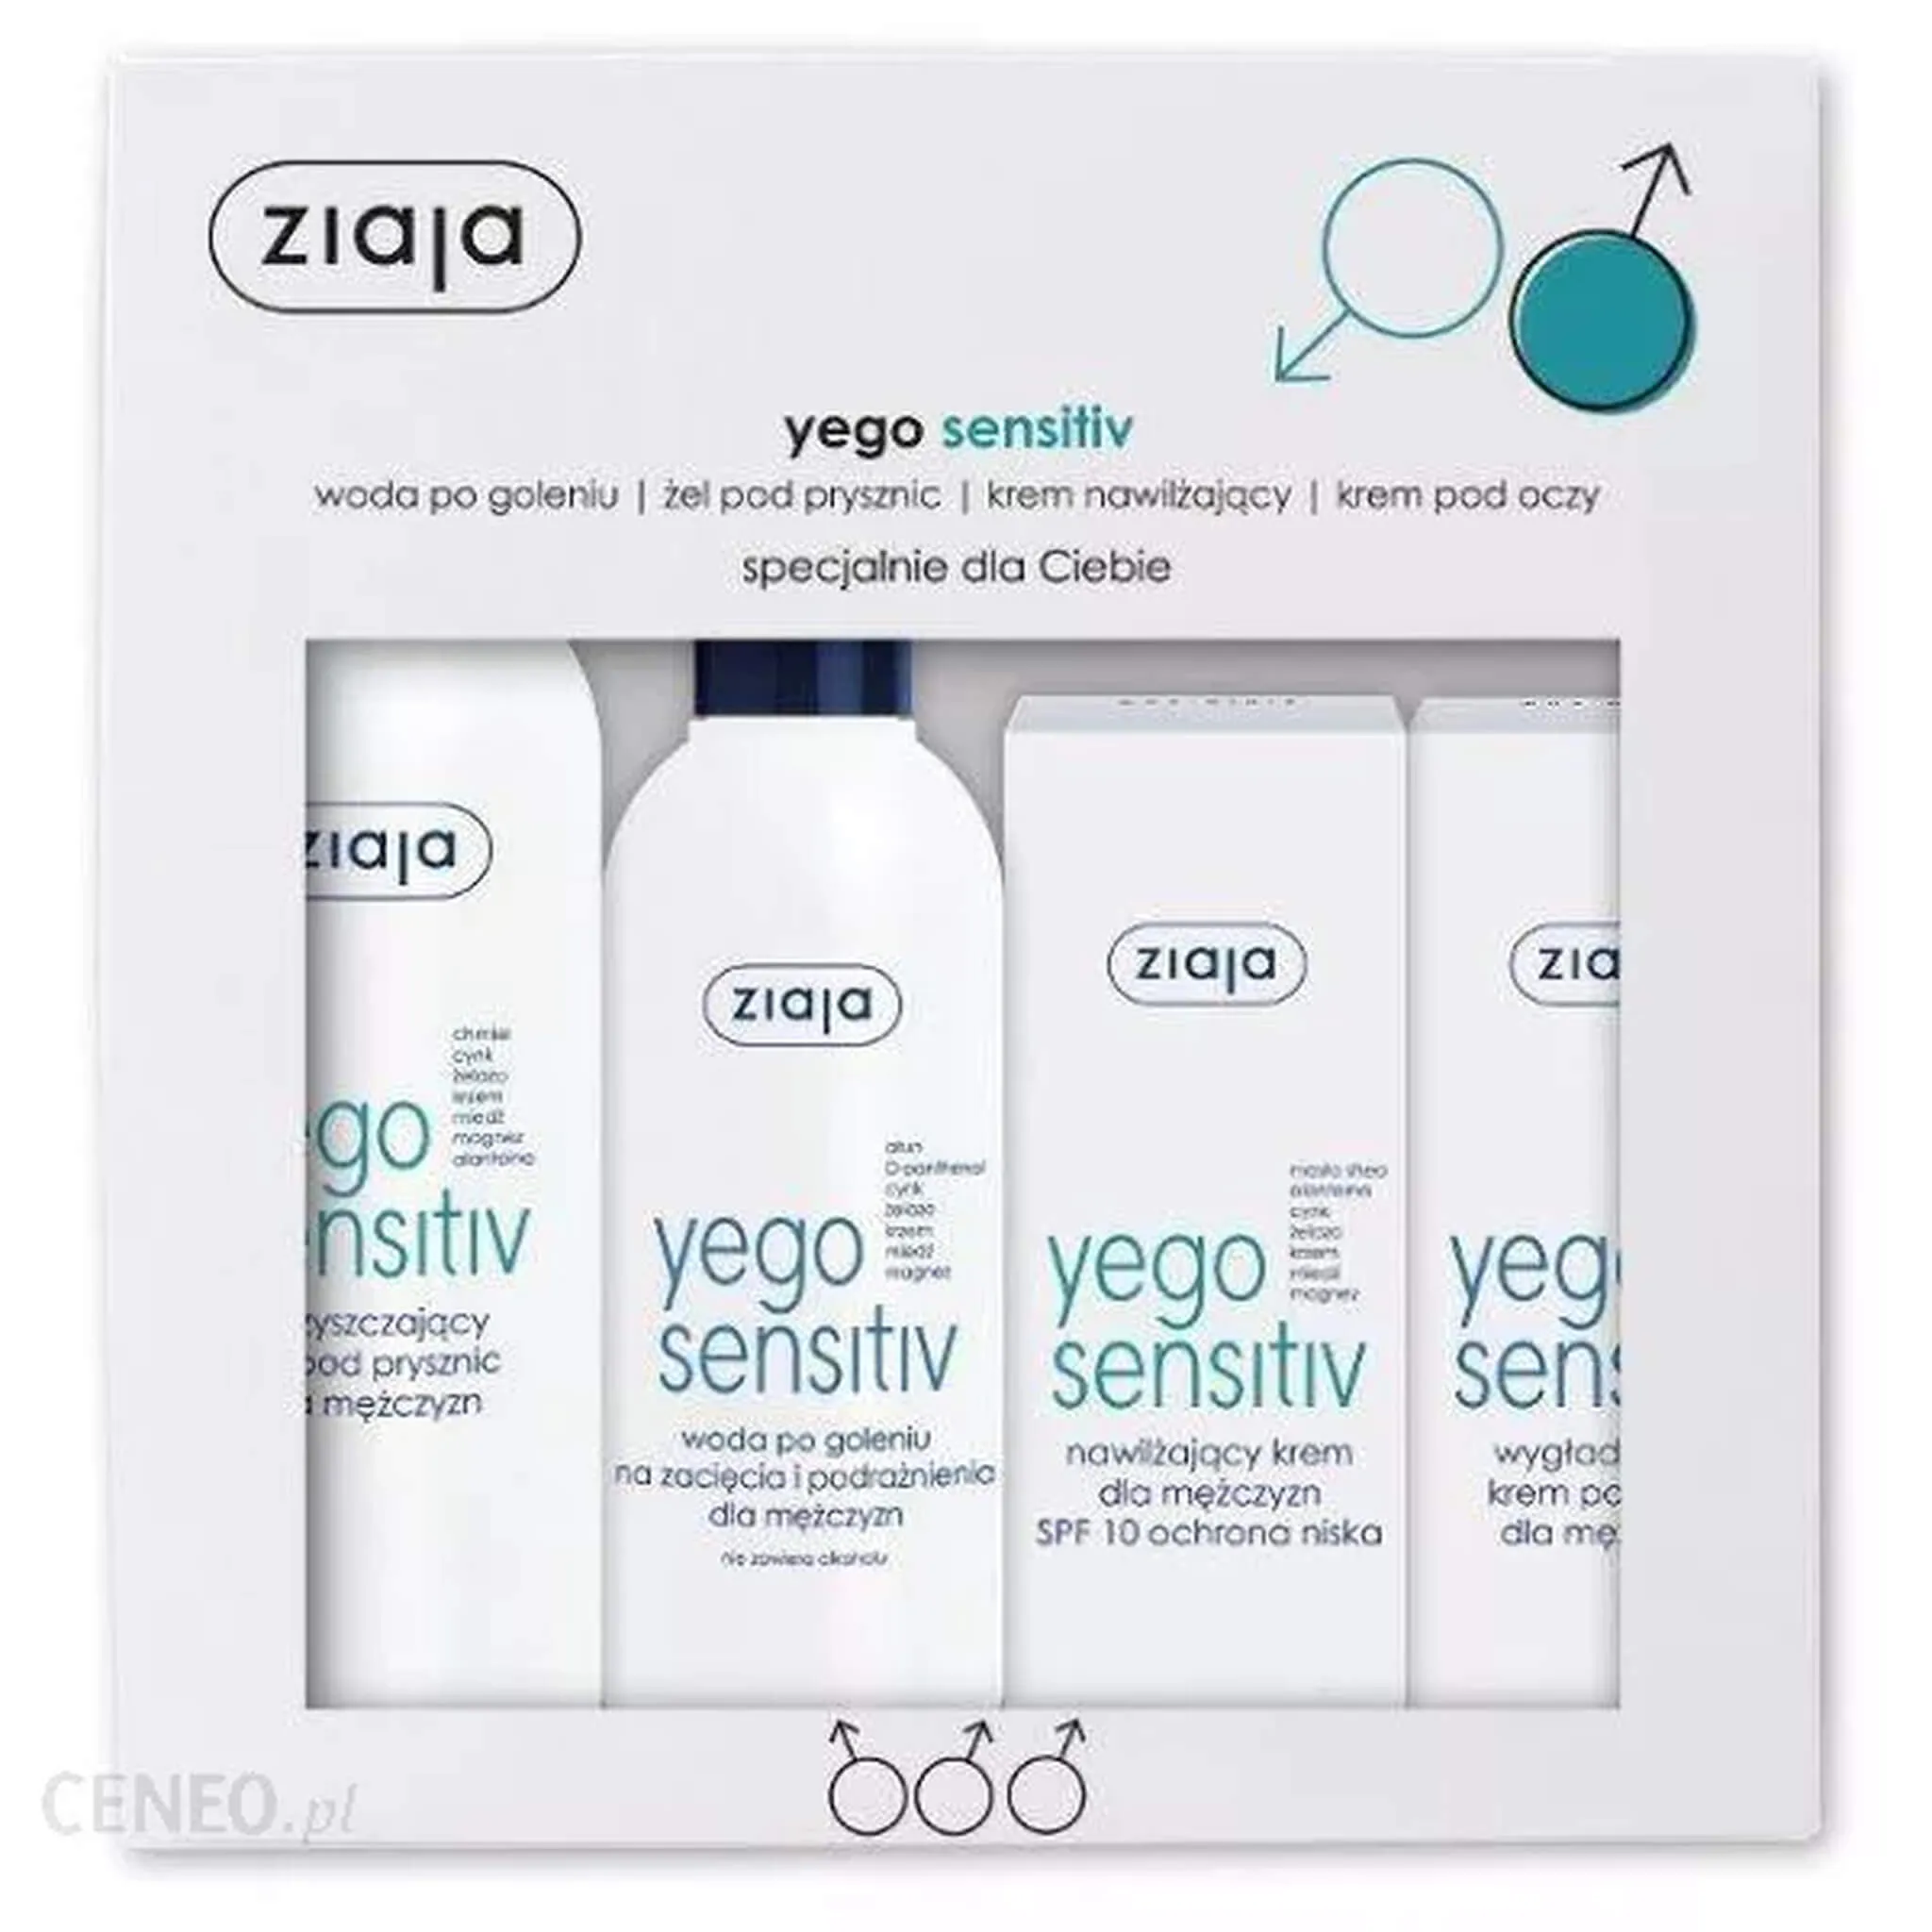 Ziaja zestaw Yego Sensitive, woda po goleniu, 50 ml + żel pod prysznic, 200 ml + krem nawilżający, 50 ml + krem pod oczy, 15 ml